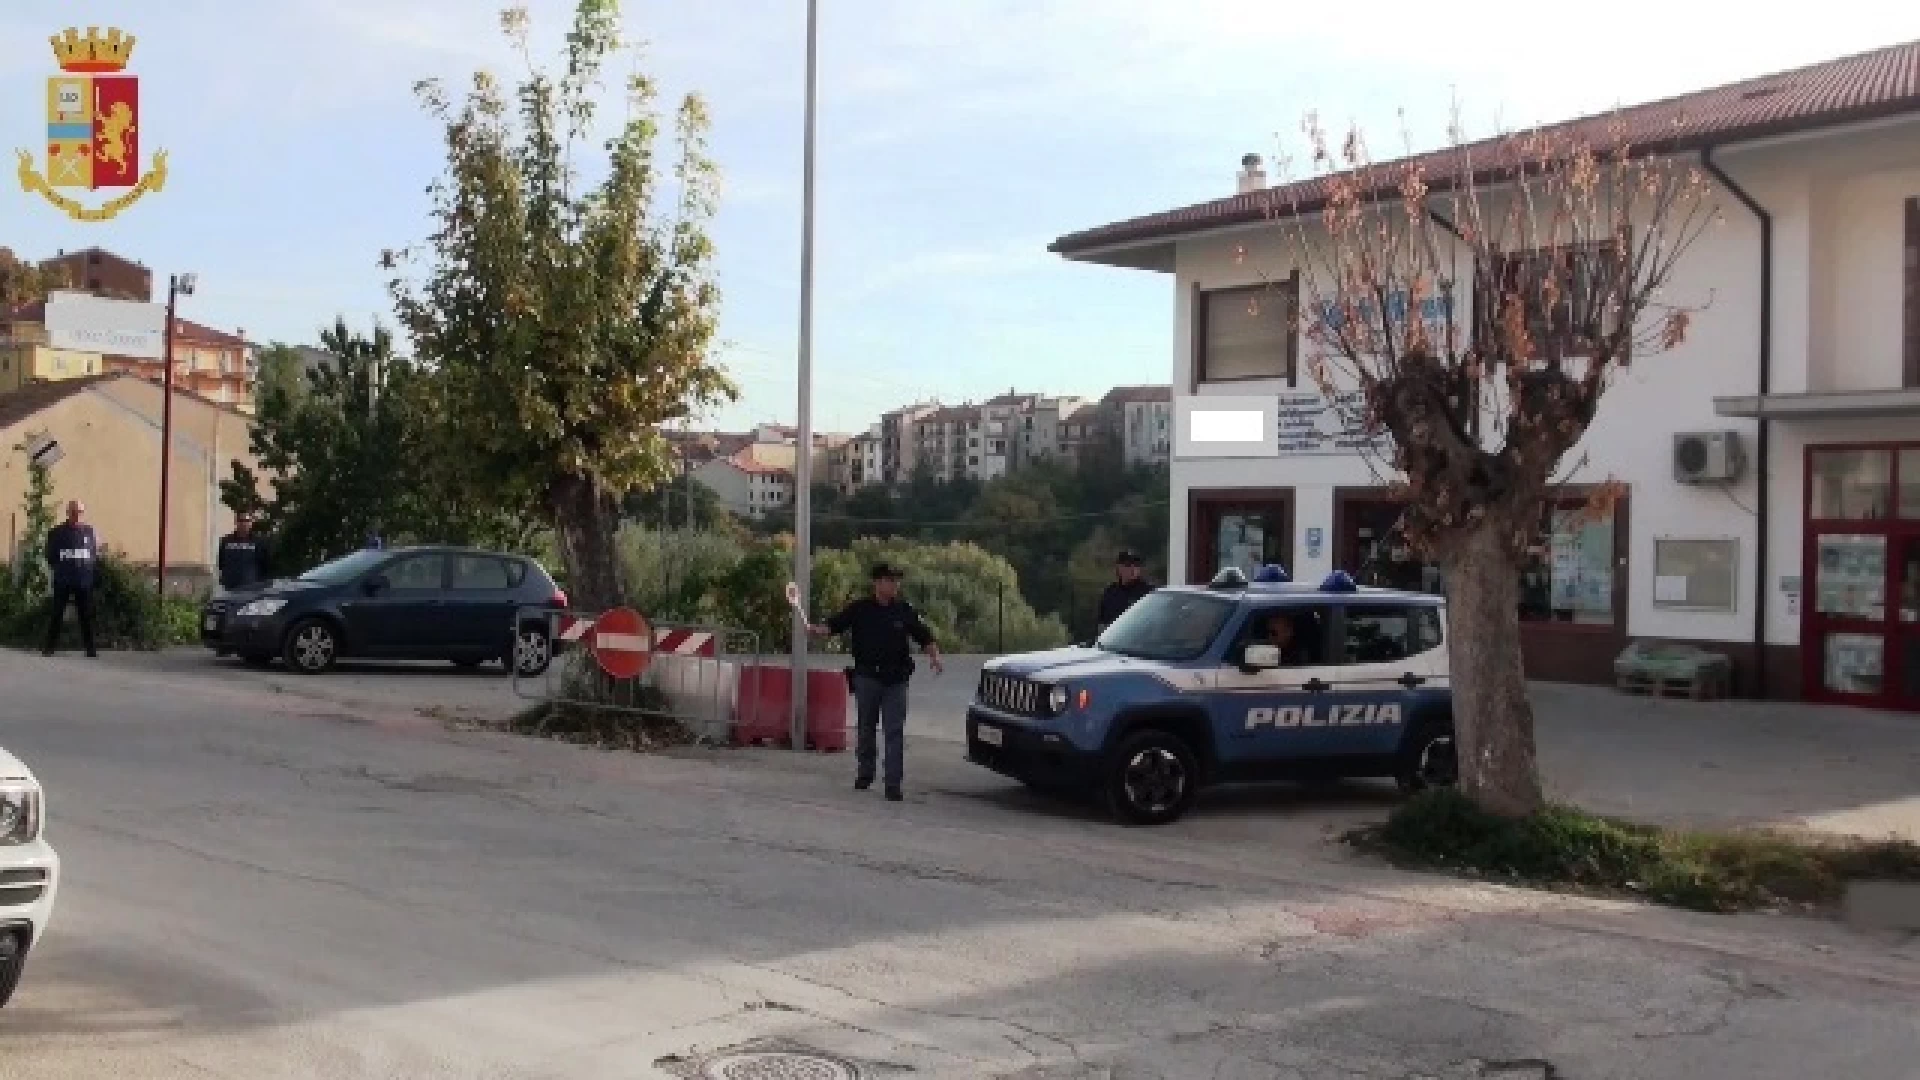 La Polizia intensifica i controlli sul territorio di Agnone. Verificate oltre 30 autovetture. Guarda il video.